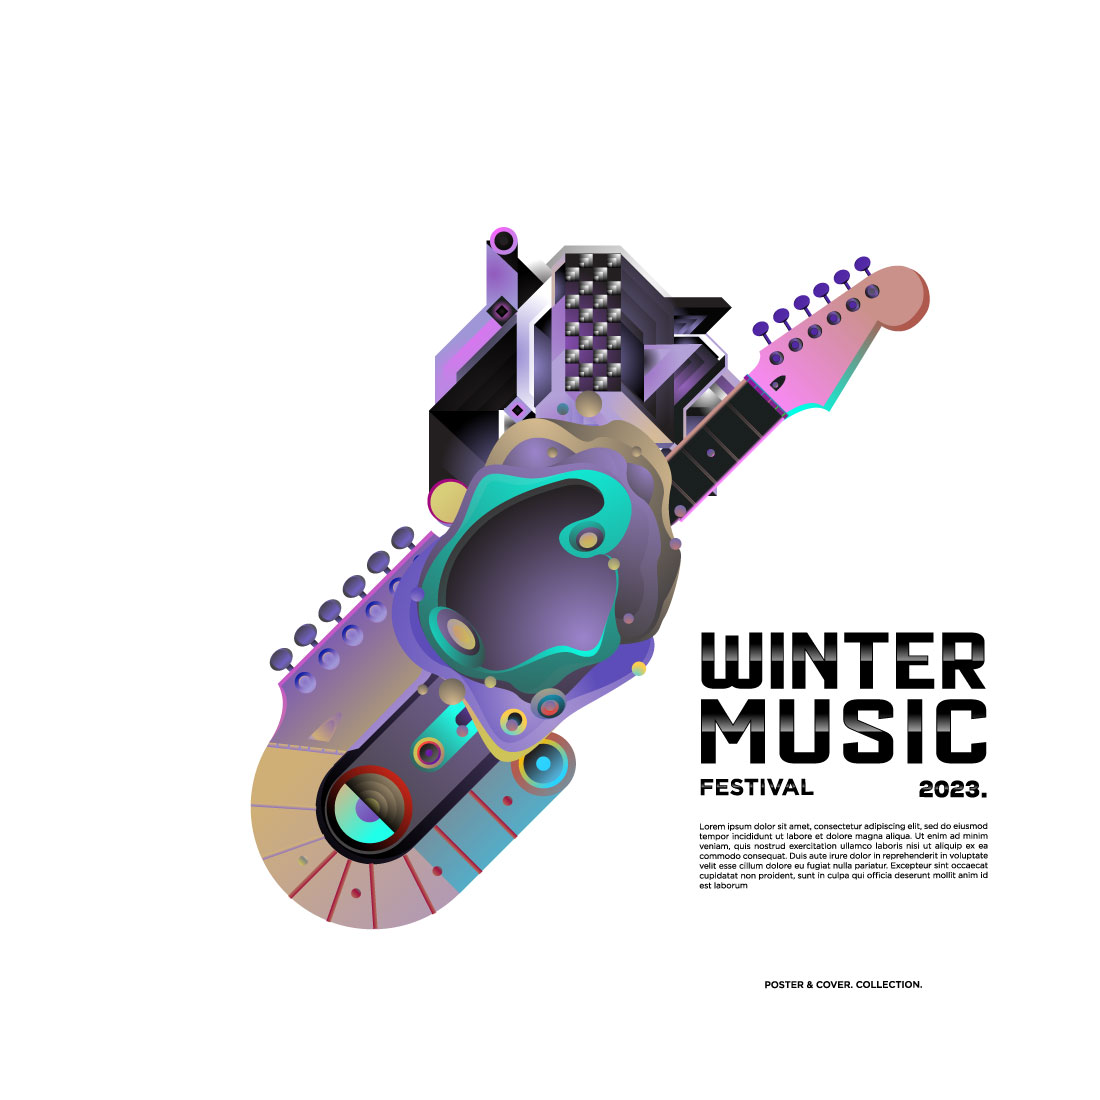 Music Festival Flyer Design cover image.